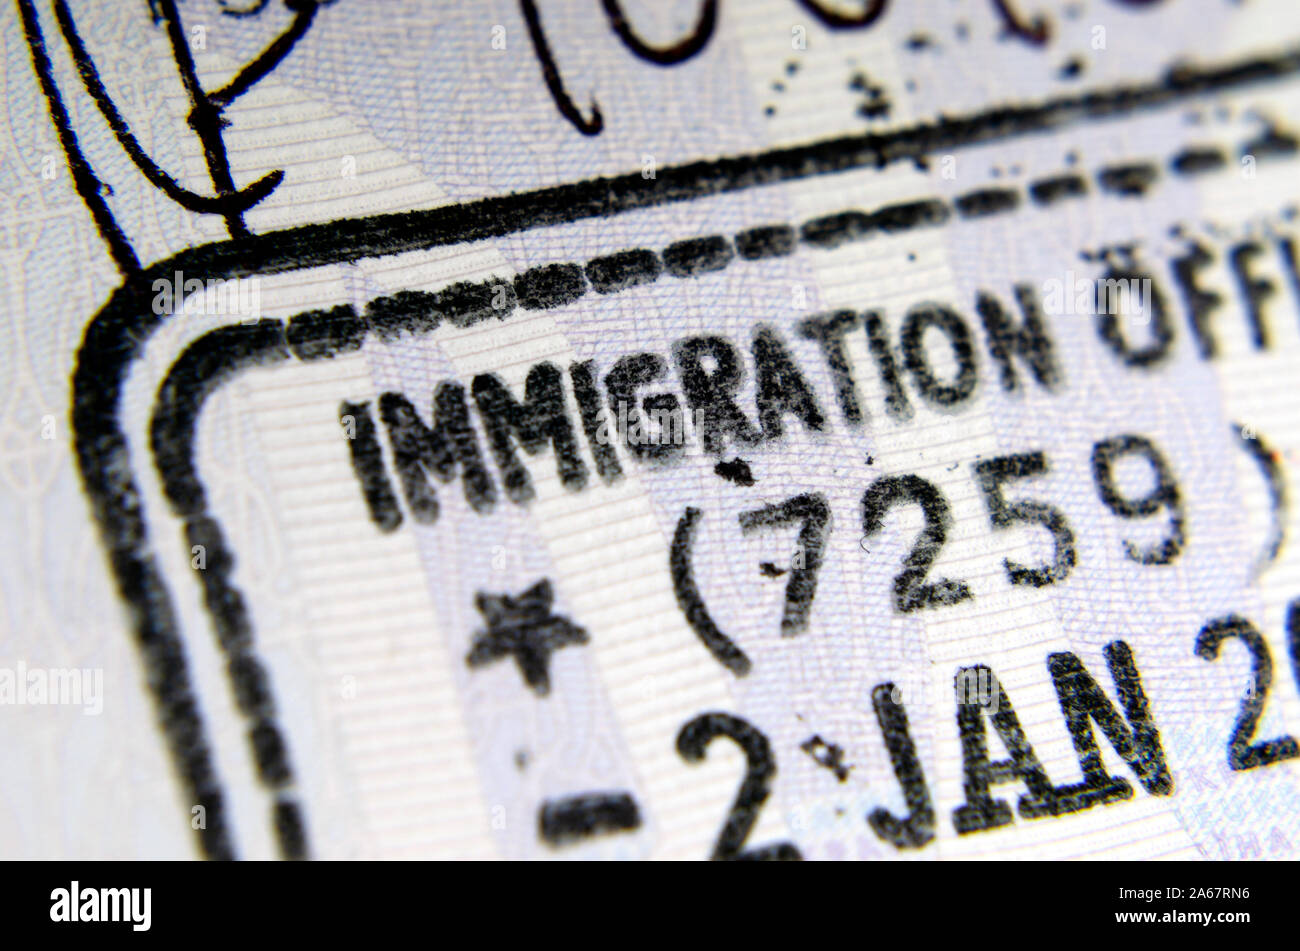 UK Eintrag Einreisestempel im Pass, wo die nur Buchstaben "EINWANDERUNG AUS' von Phrase die ganze 'Immigration Officer' sichtbar. Überzeugendes Konzept. Stockfoto